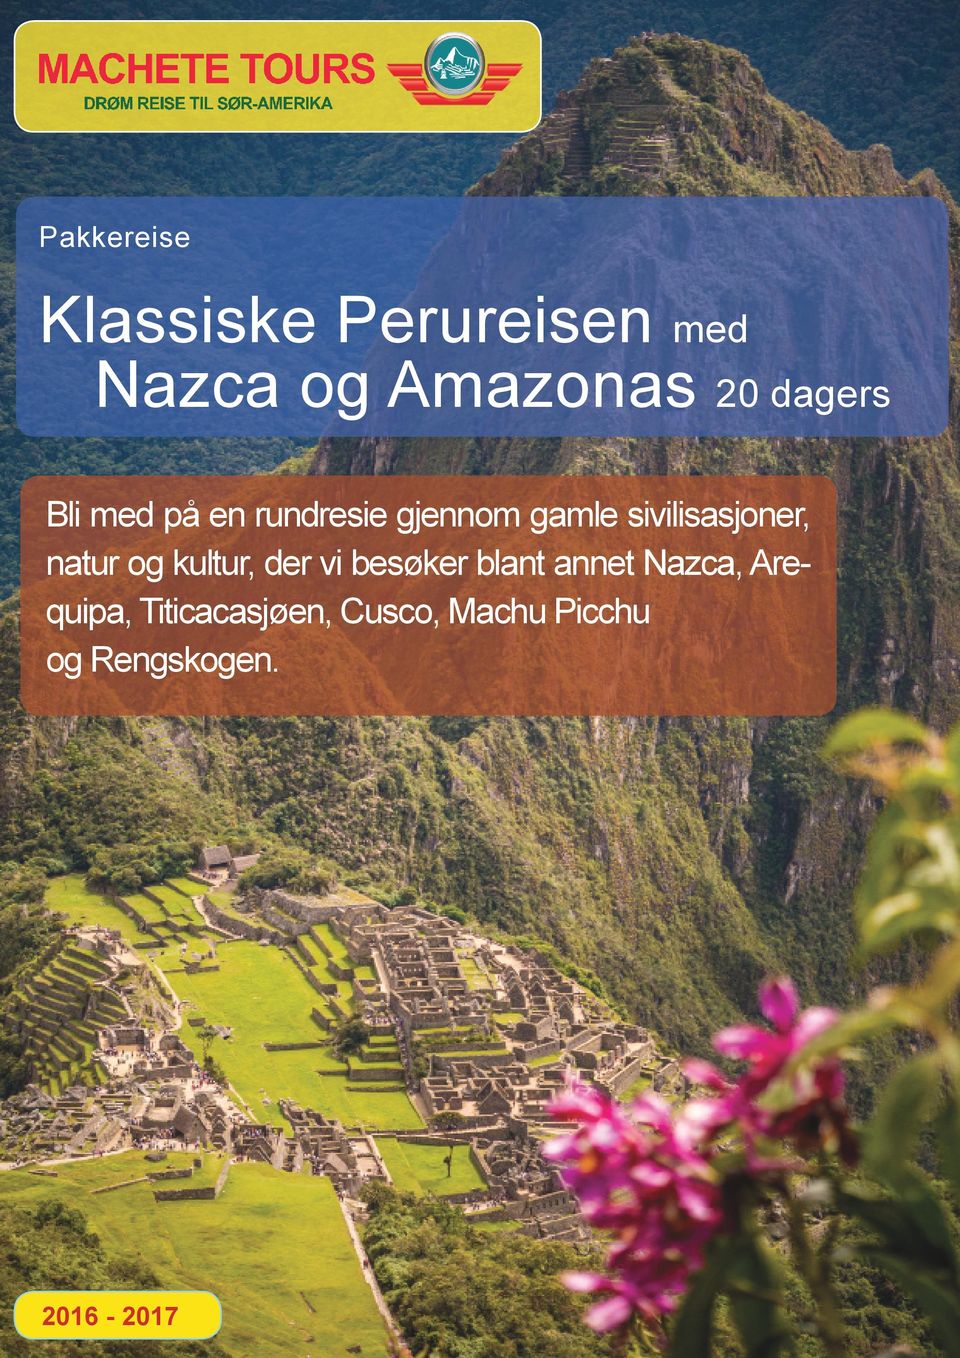 der vi besøker blant annet Nazca, Arequipa, Titicacasjøen, Cusco,